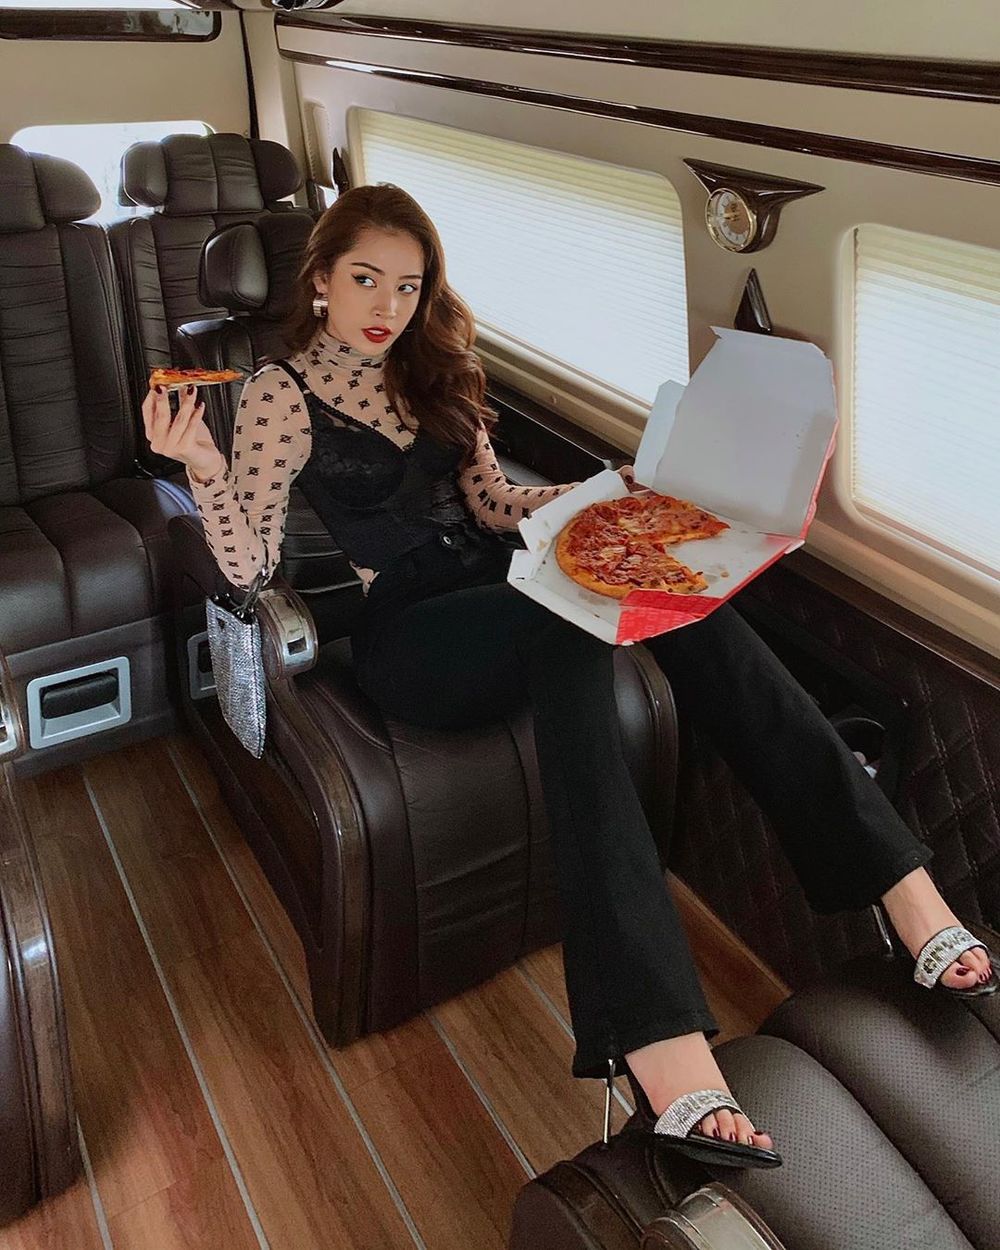  
Chi Pu lại sáng tạo hơn khi chụp ảnh trong xe, người đẹp diện bộ cánh hiệu, tạo dáng đang ăn pizza. (Ảnh: FBNV)